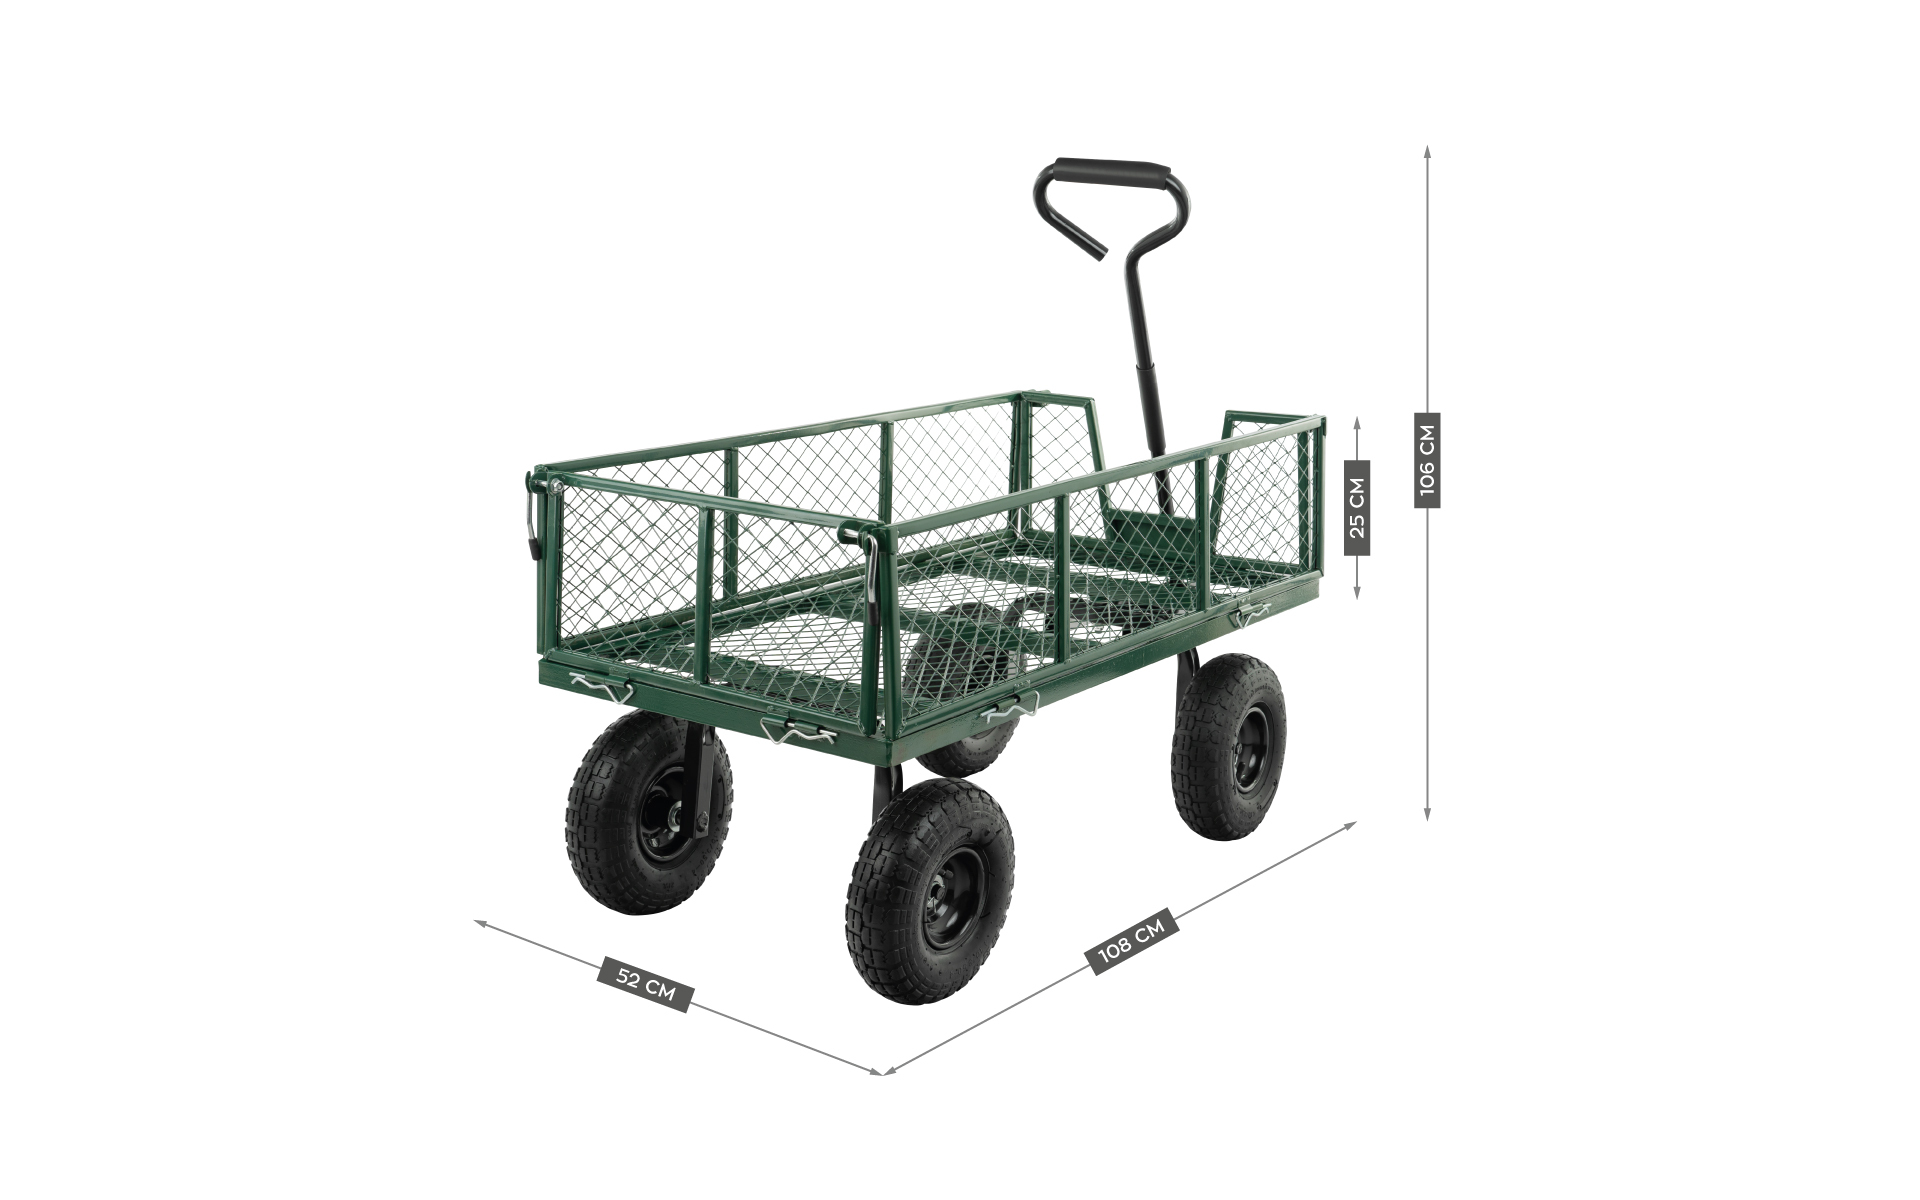 Wózek ogrodowy Mark Adler Cart 4.0 wymiary